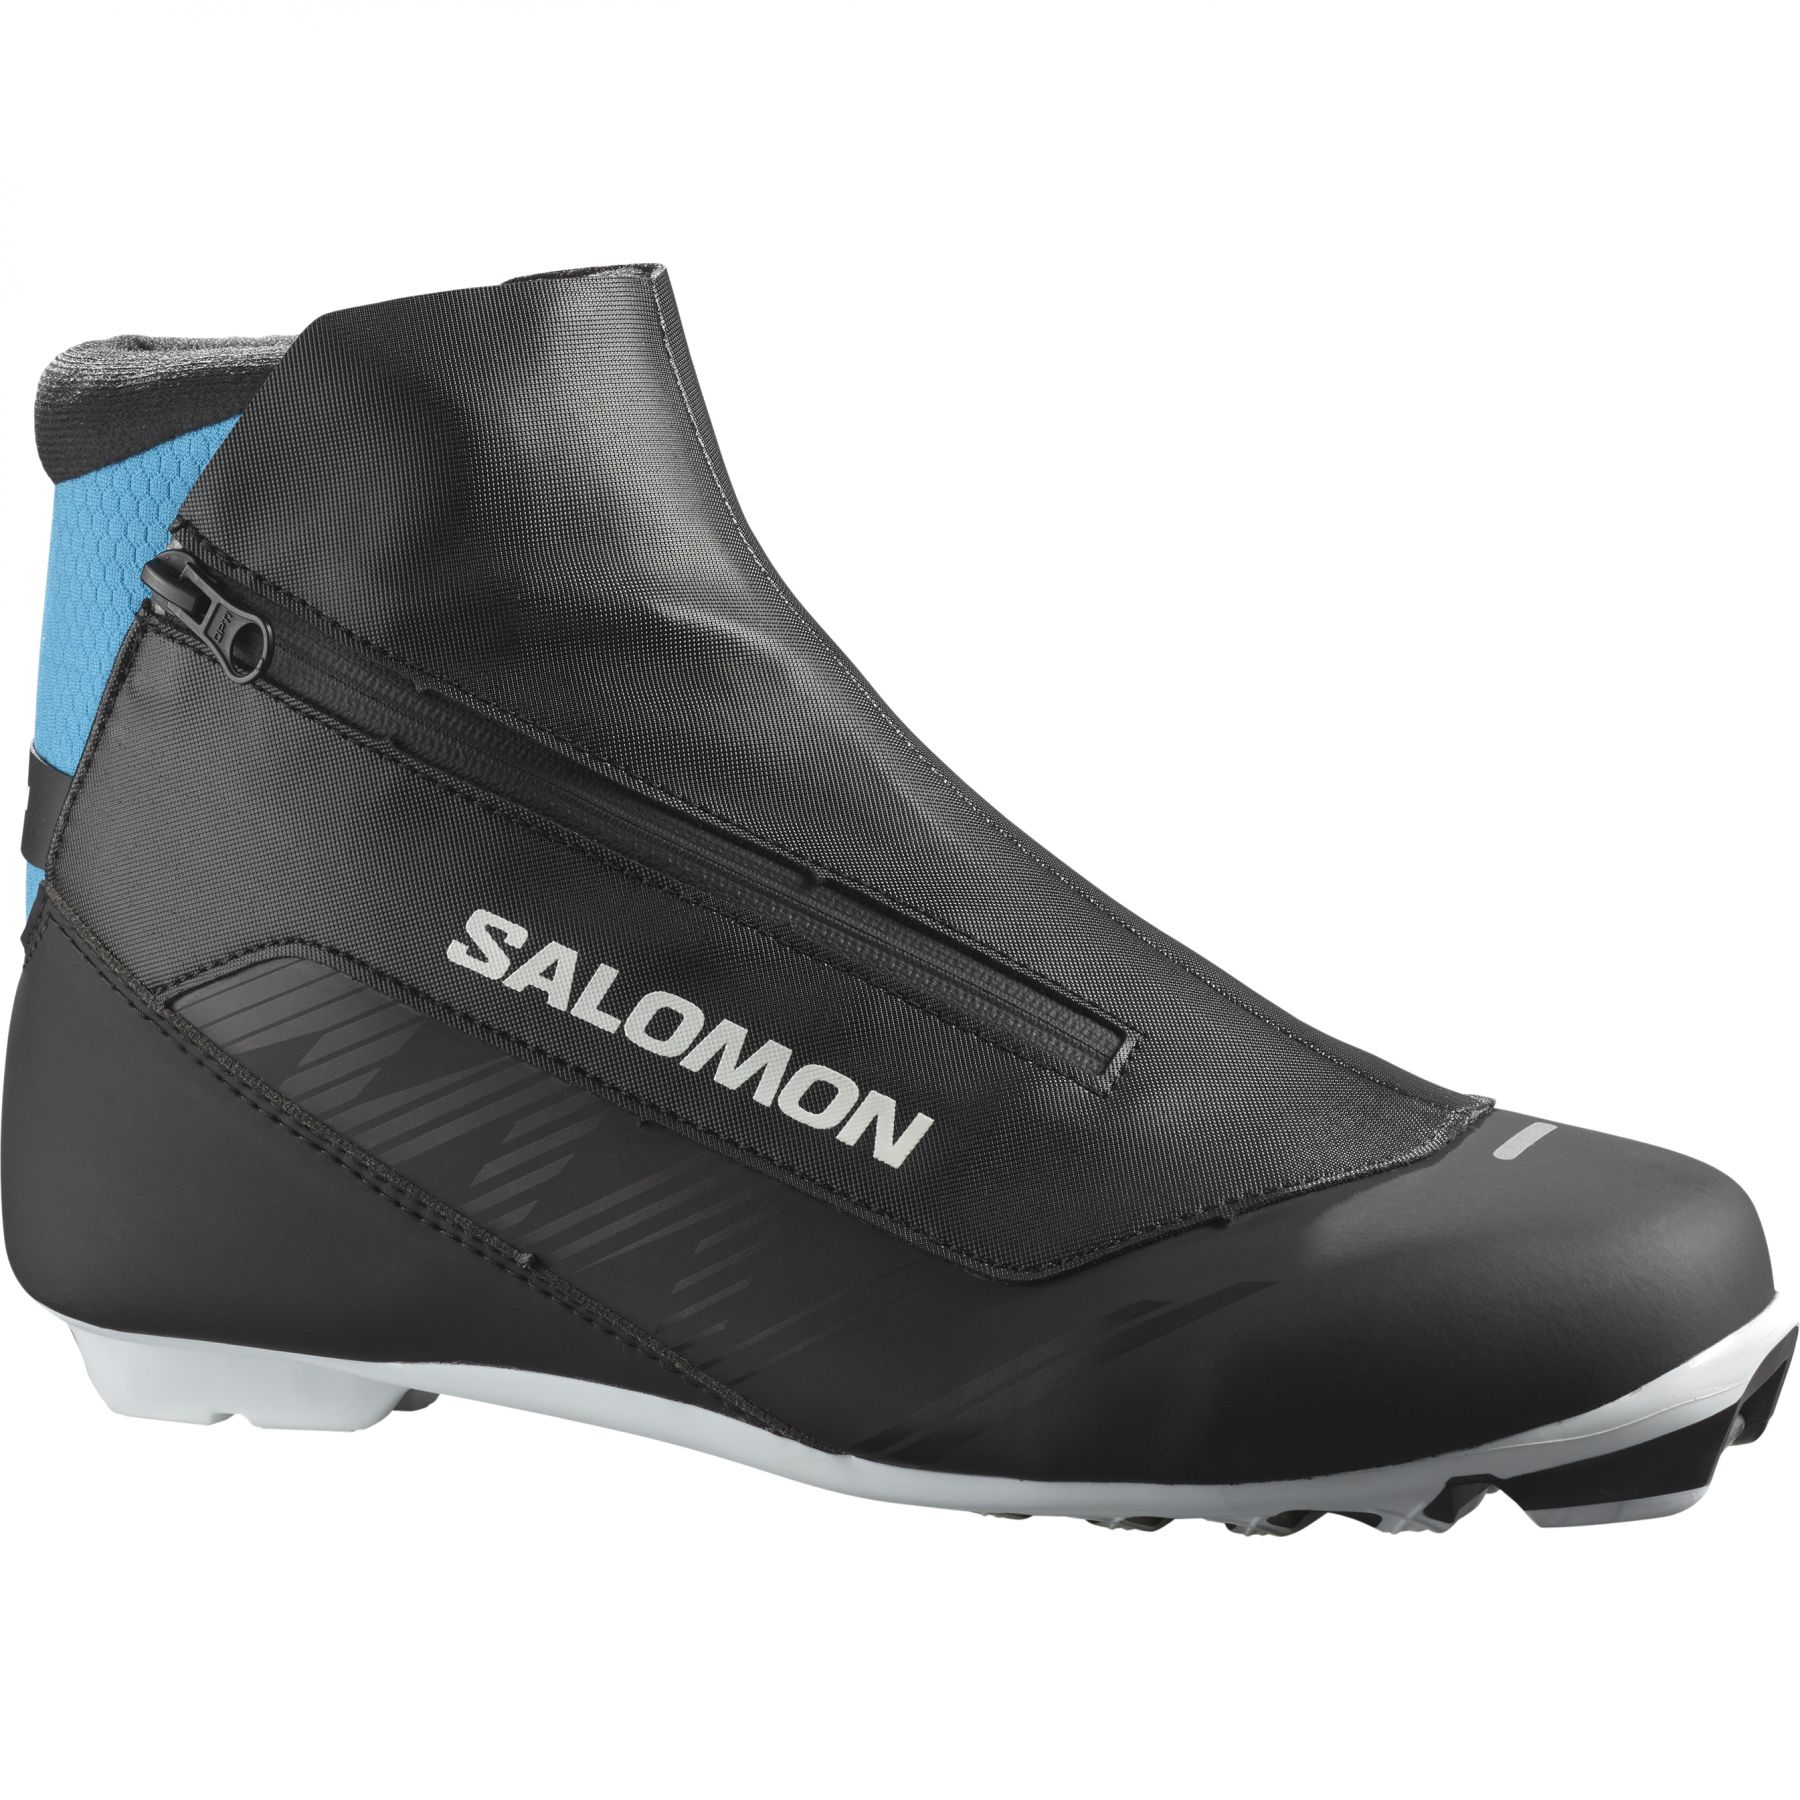 Brug Salomon RC8 Prolink, langrendsstøvler, herre, sort til en forbedret oplevelse